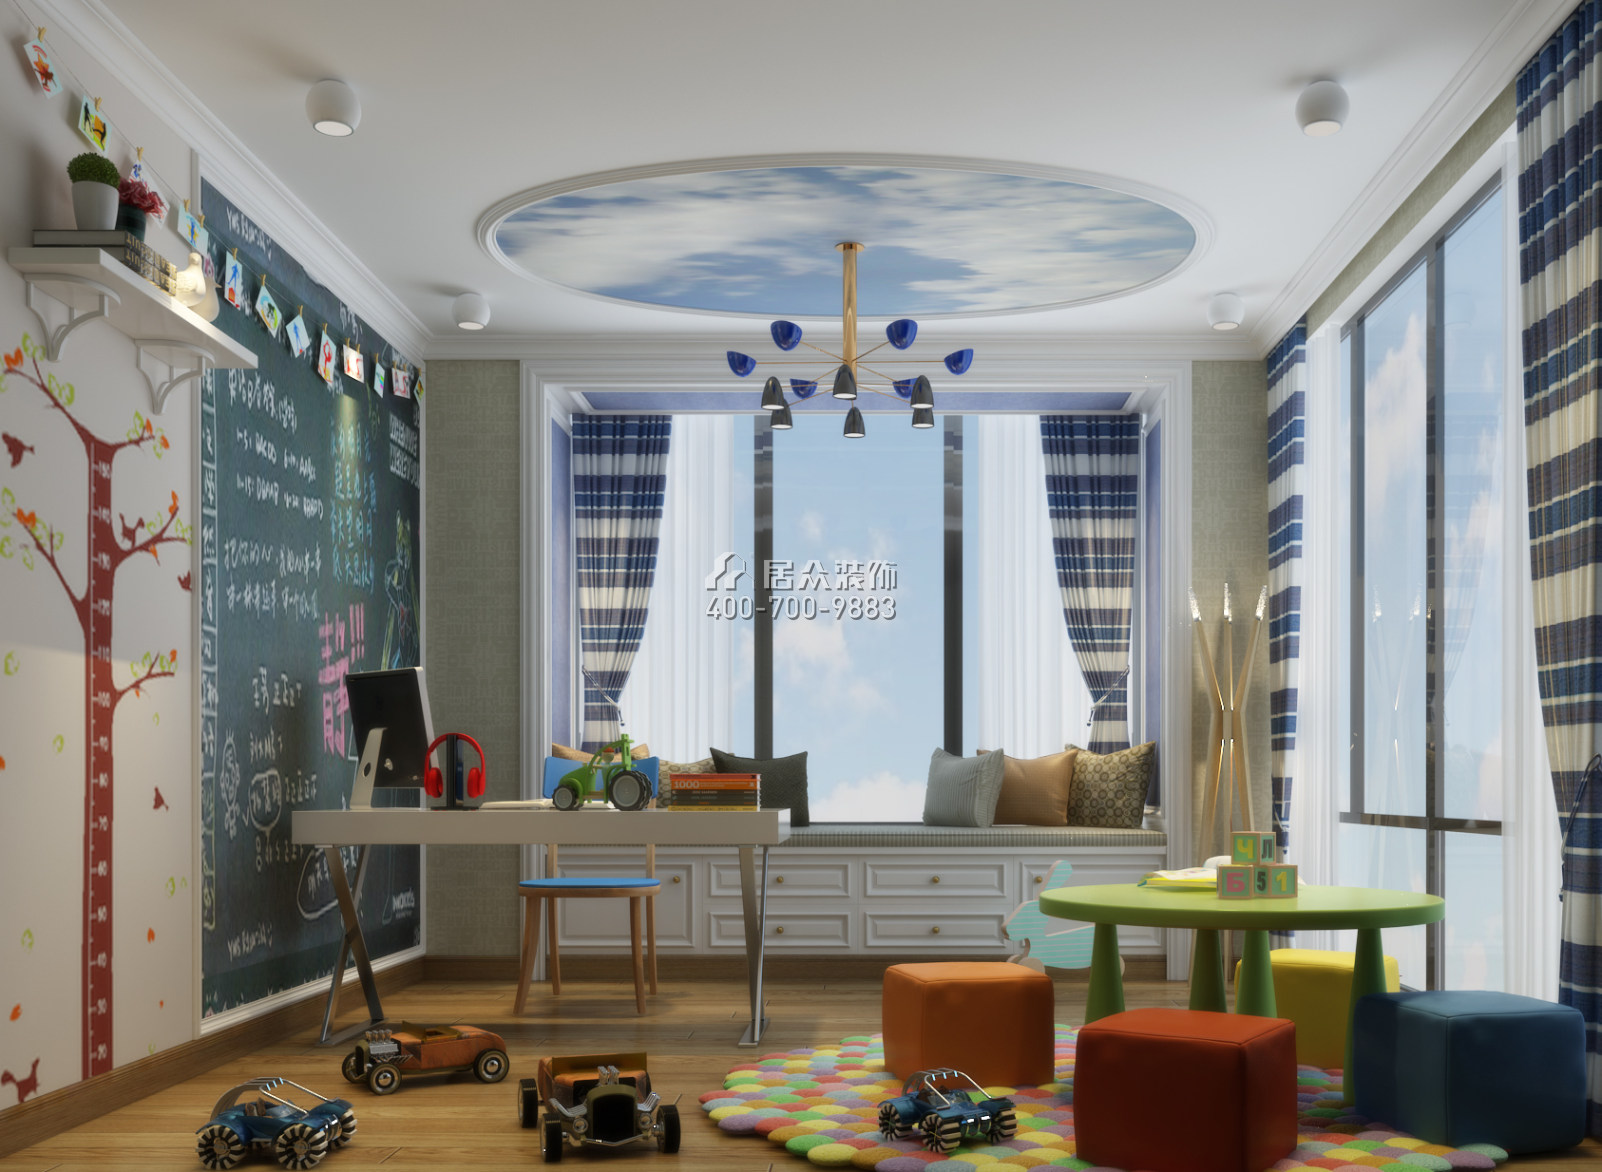 幸福世家270平方米中式風格復式戶型兒童房裝修效果圖